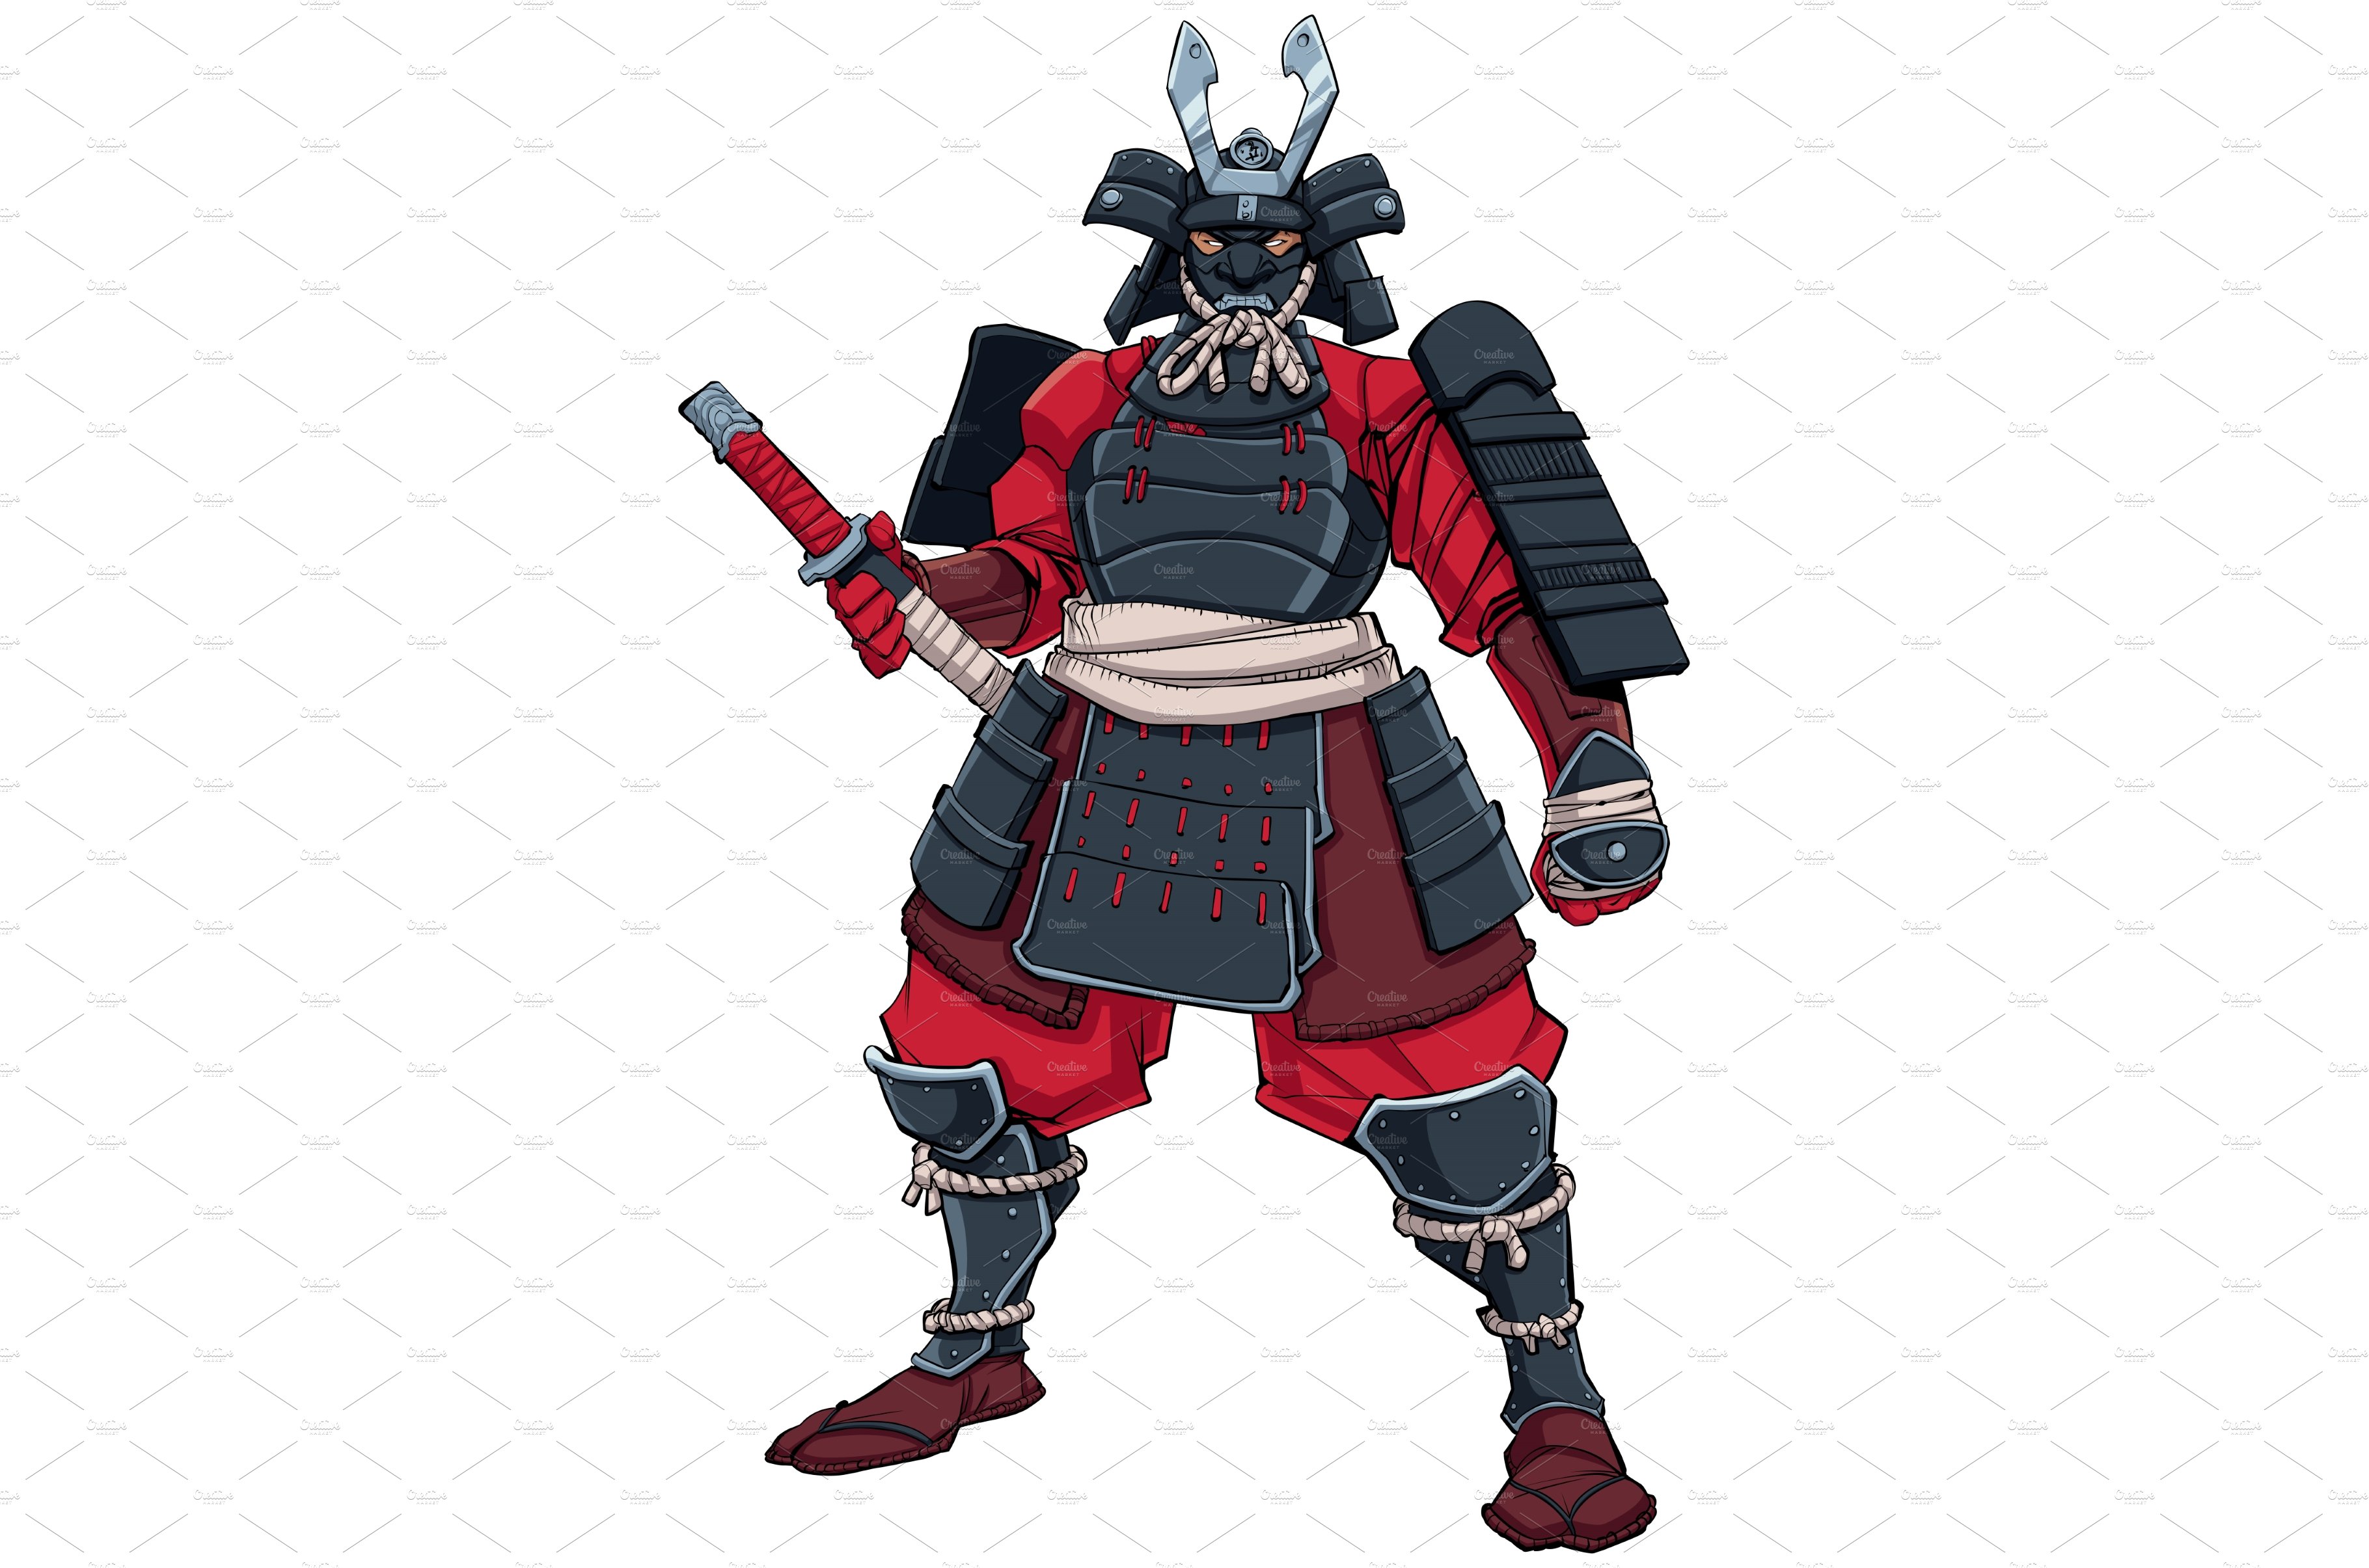 Samurai Warrior Black cover image.